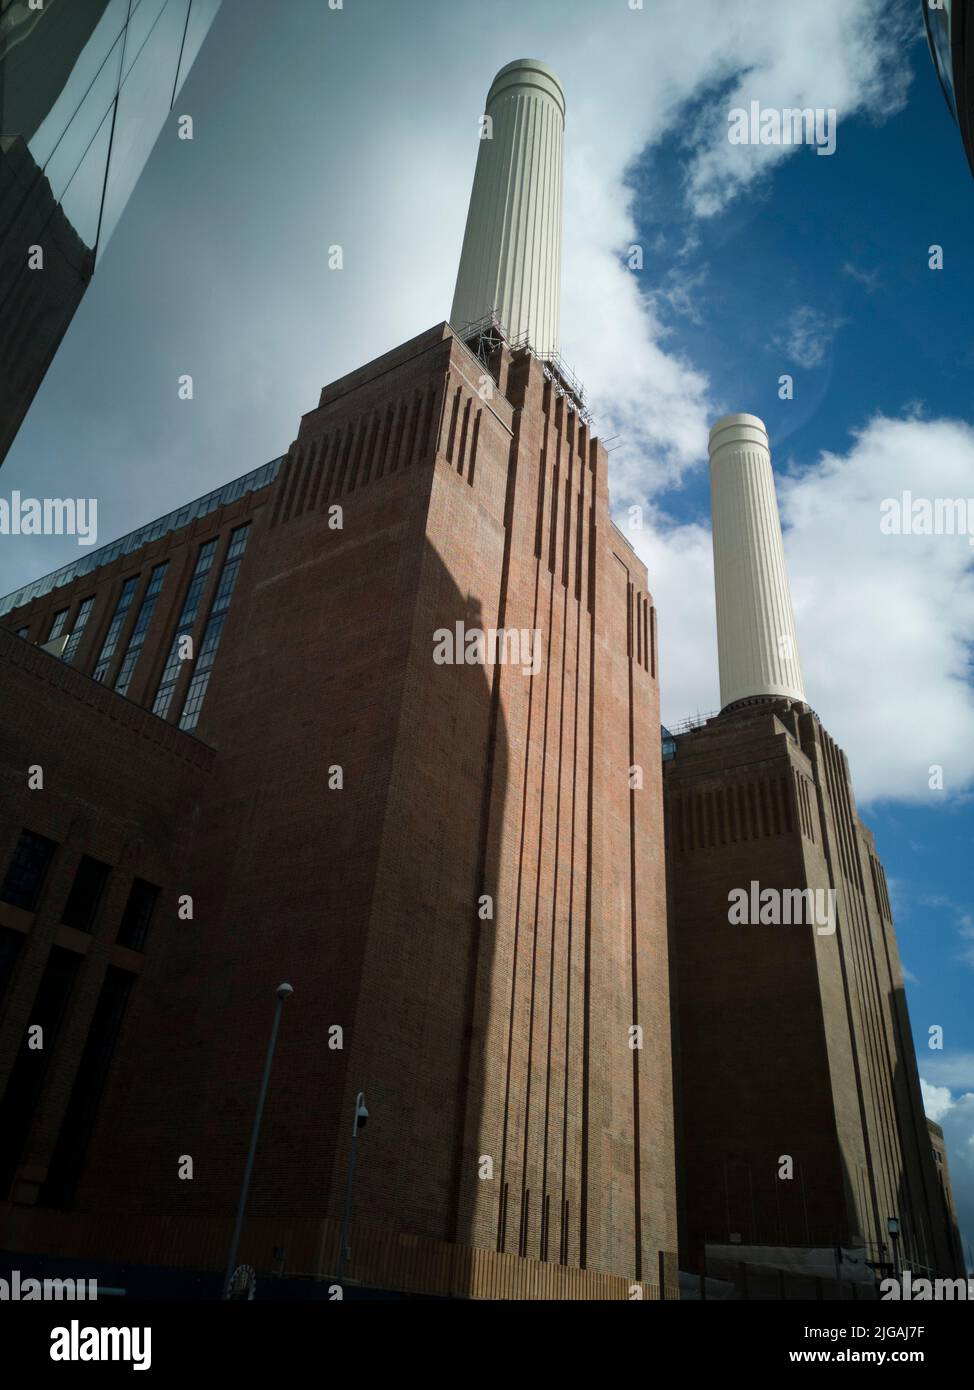 Alrededor de Battersea Power Station, Londres, Reino Unido, 2021 de octubre. Las torres reacondicionadas de la ahora rediseñada Estación de Energía de Battersea. Foto de stock